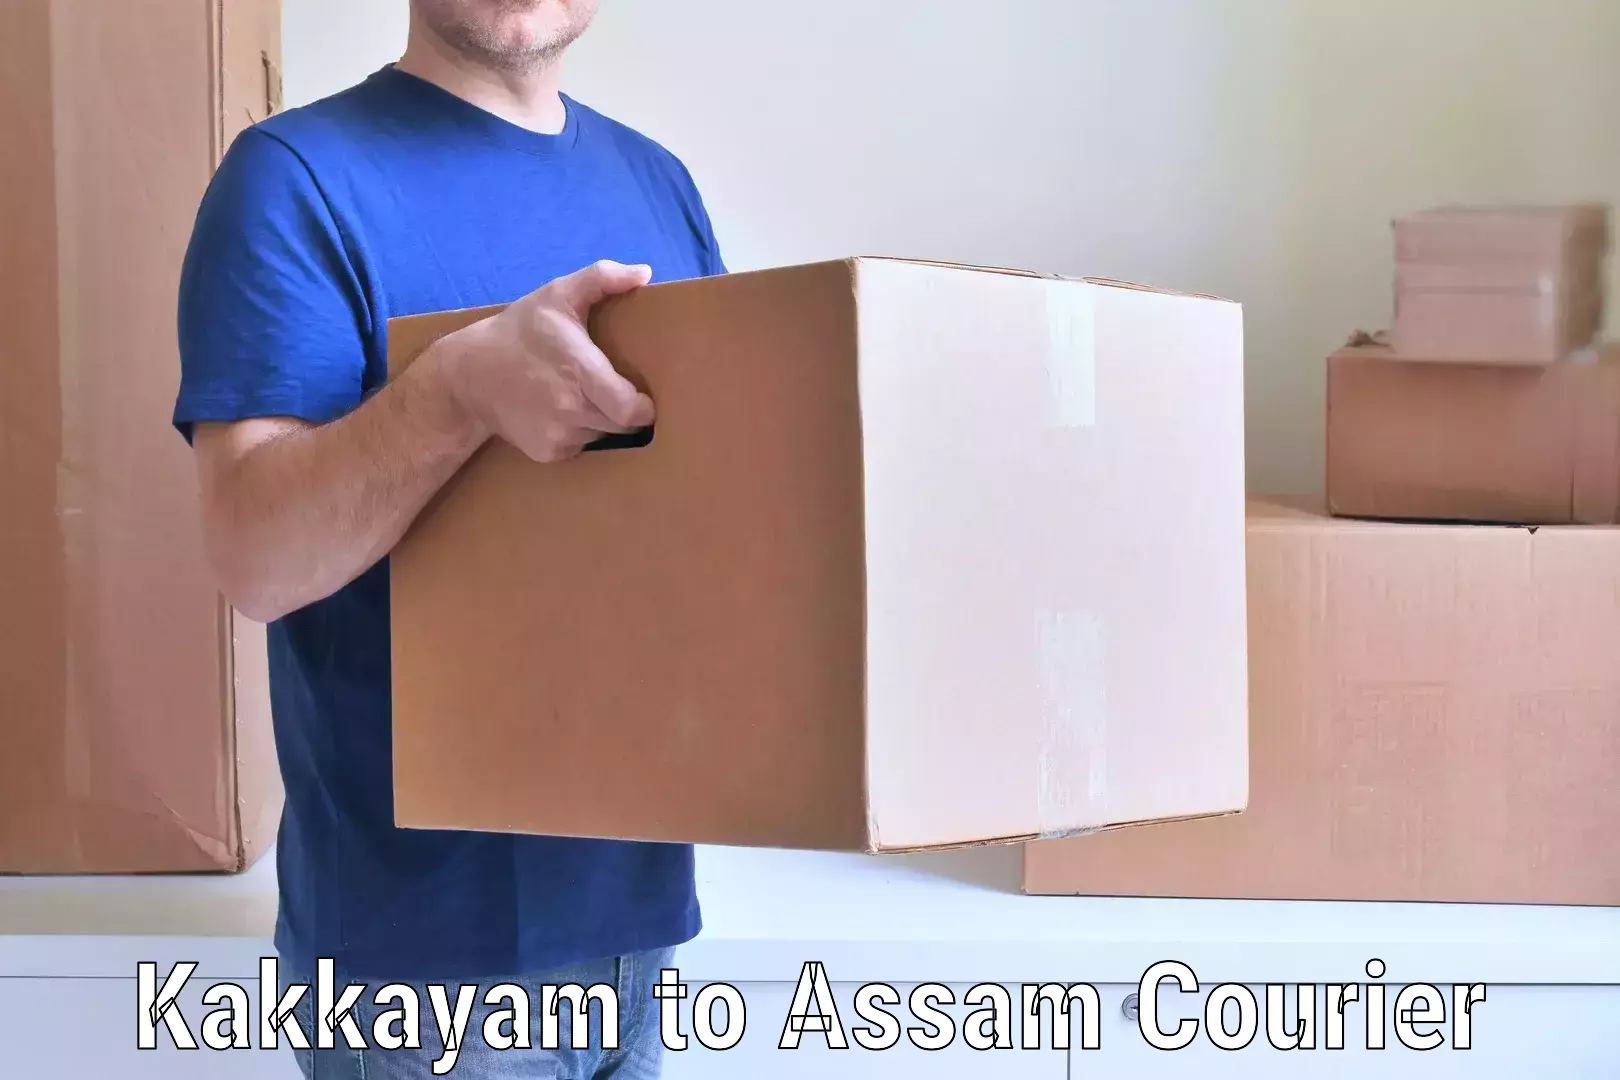 Easy furniture transport in Kakkayam to Assam